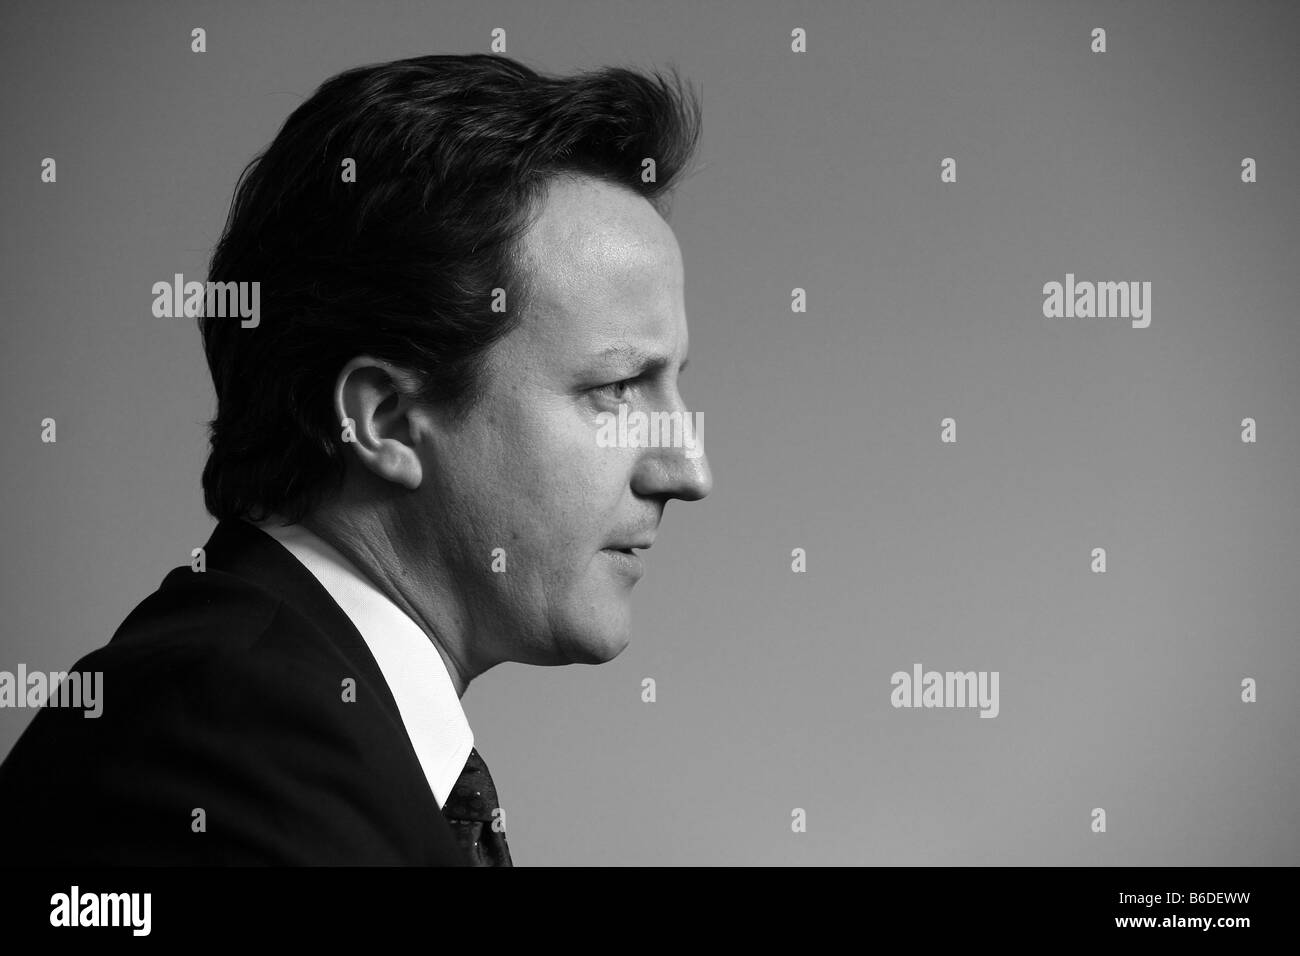 El líder del partido Conservador, David Cameron, perfil en blanco y negro Foto de stock